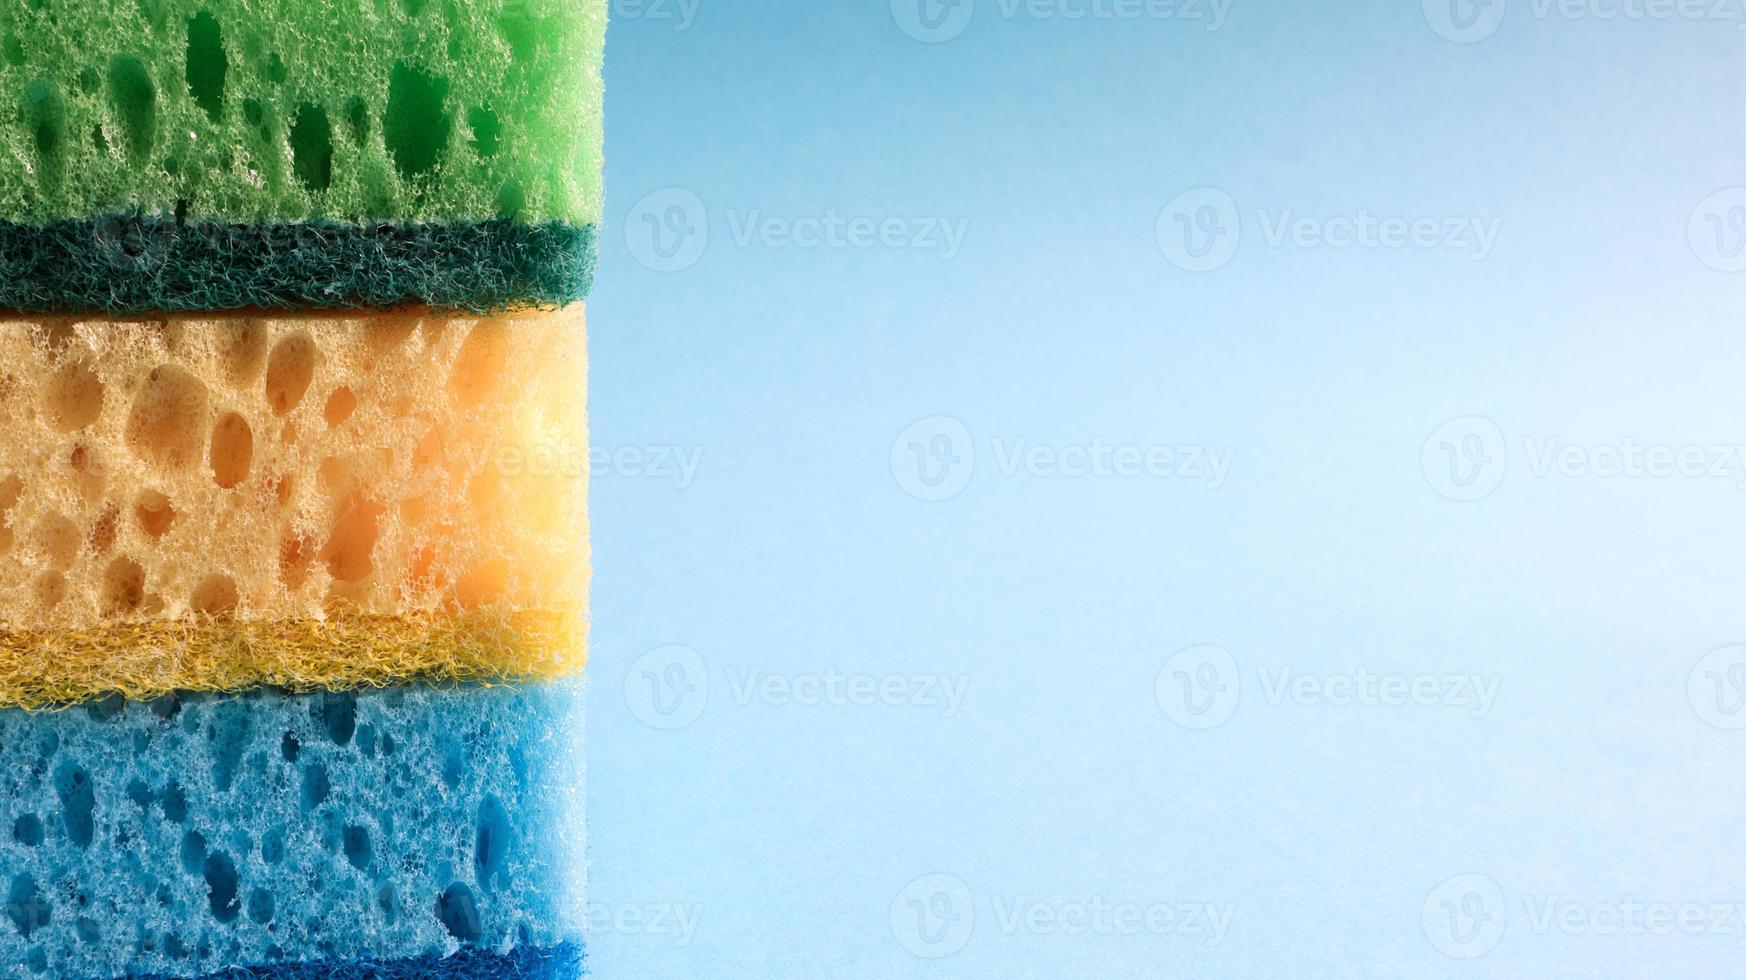 Viele blaue, rote, gelbe, grüne Schwämme werden verwendet, um den Schmutz zu waschen und zu wischen, der von Hausfrauen im Alltag verwendet wird. sie bestehen aus porösem Material wie Schaumstoff. gute Waschmittelretention foto